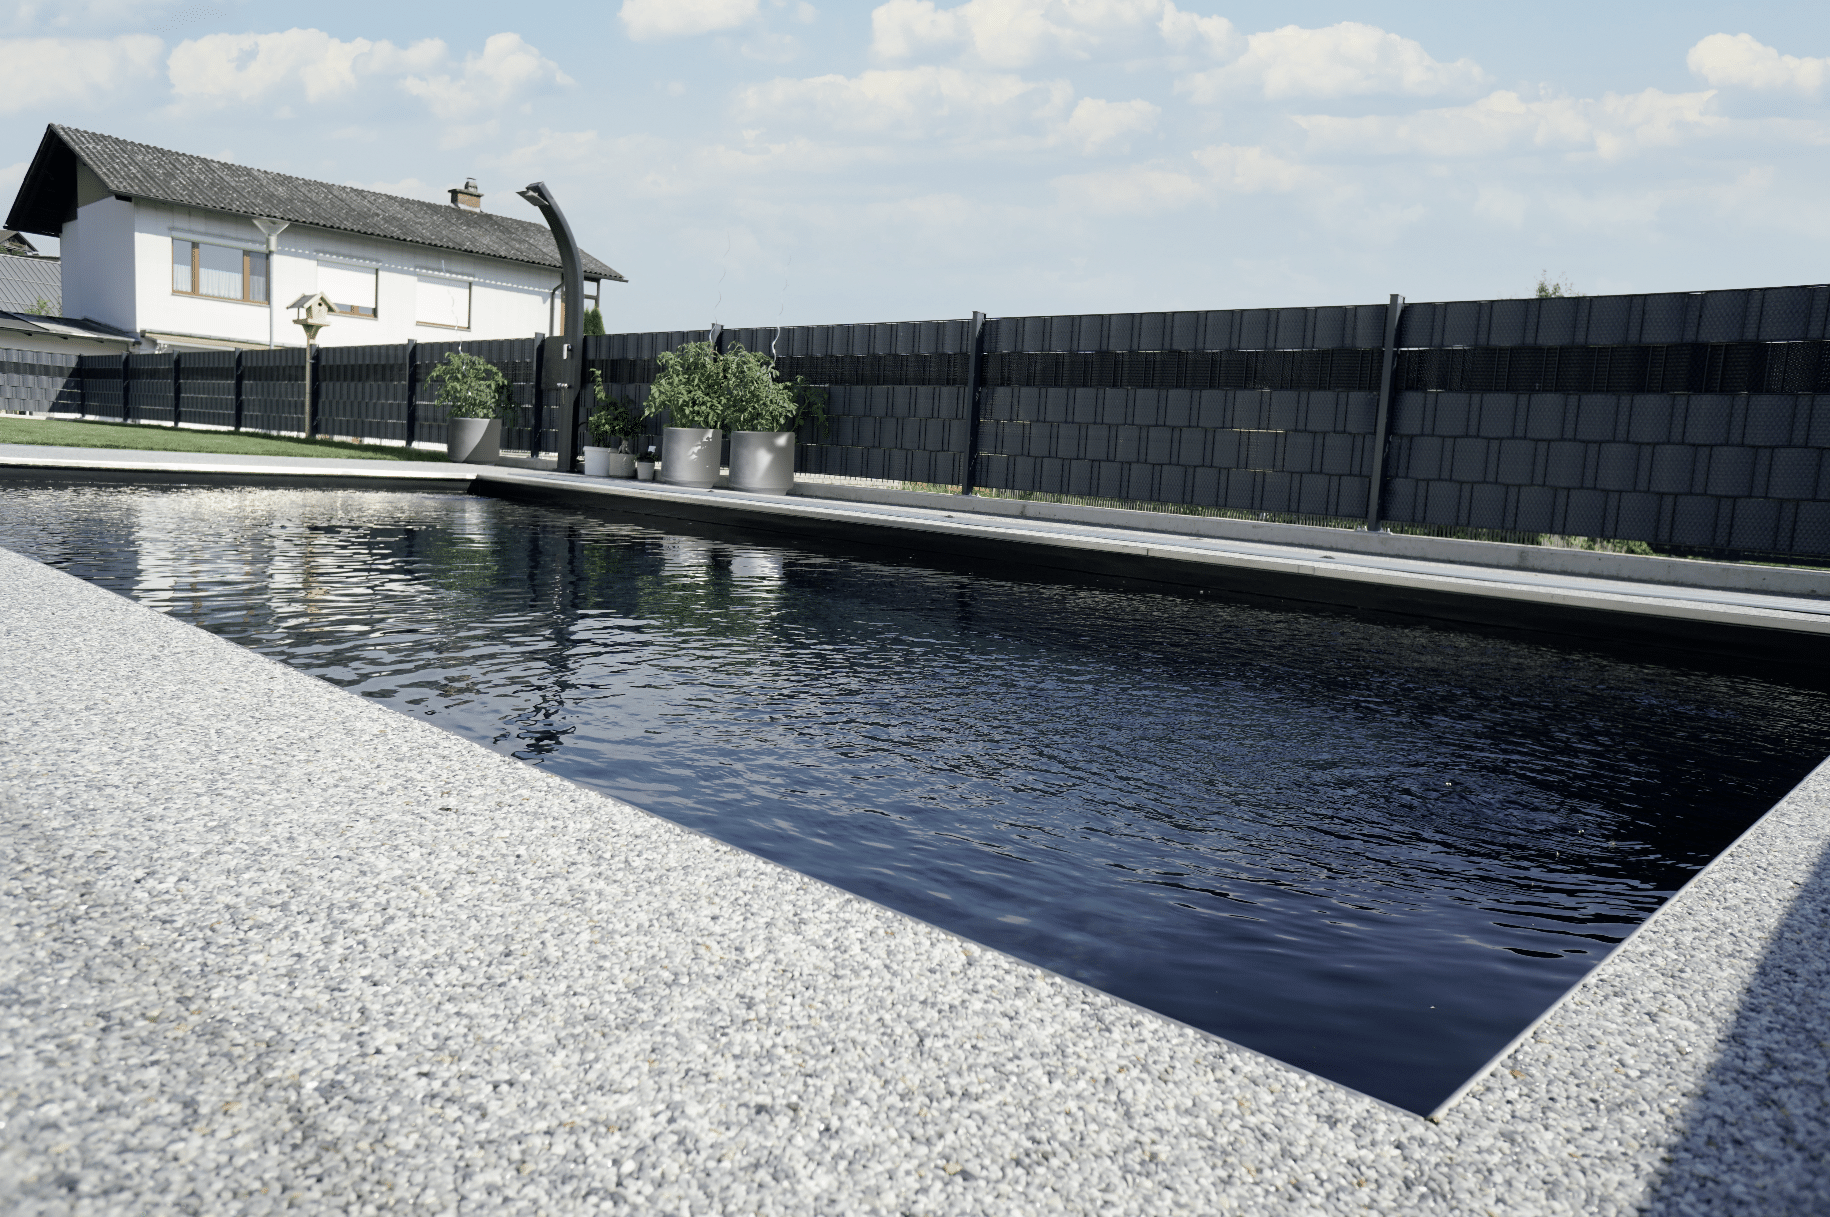 stoneCARPET präsentiert den Kieselteppich auf der Terrasse, welcher rund um den Pool gelegt wurde um das natürliche Gefühl zu wahren.